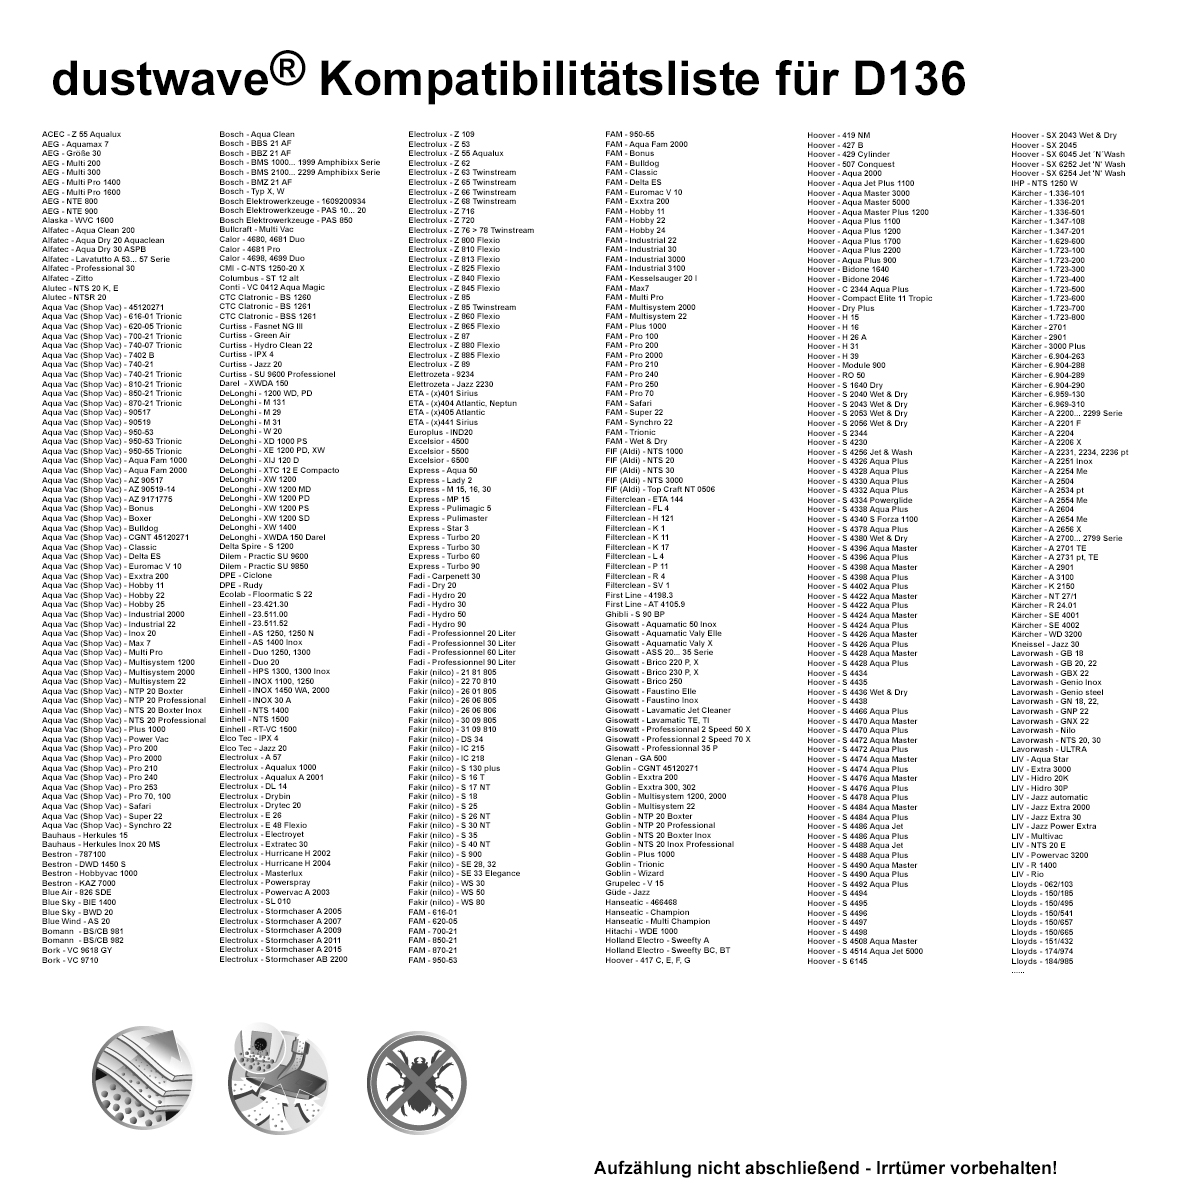 20x dustwave® Staubsaugerbeutel (ca. 20 Liter) für Kärcher 2201, 2204, 6.959-130 / Markenfilterbeutel - Made in Germany